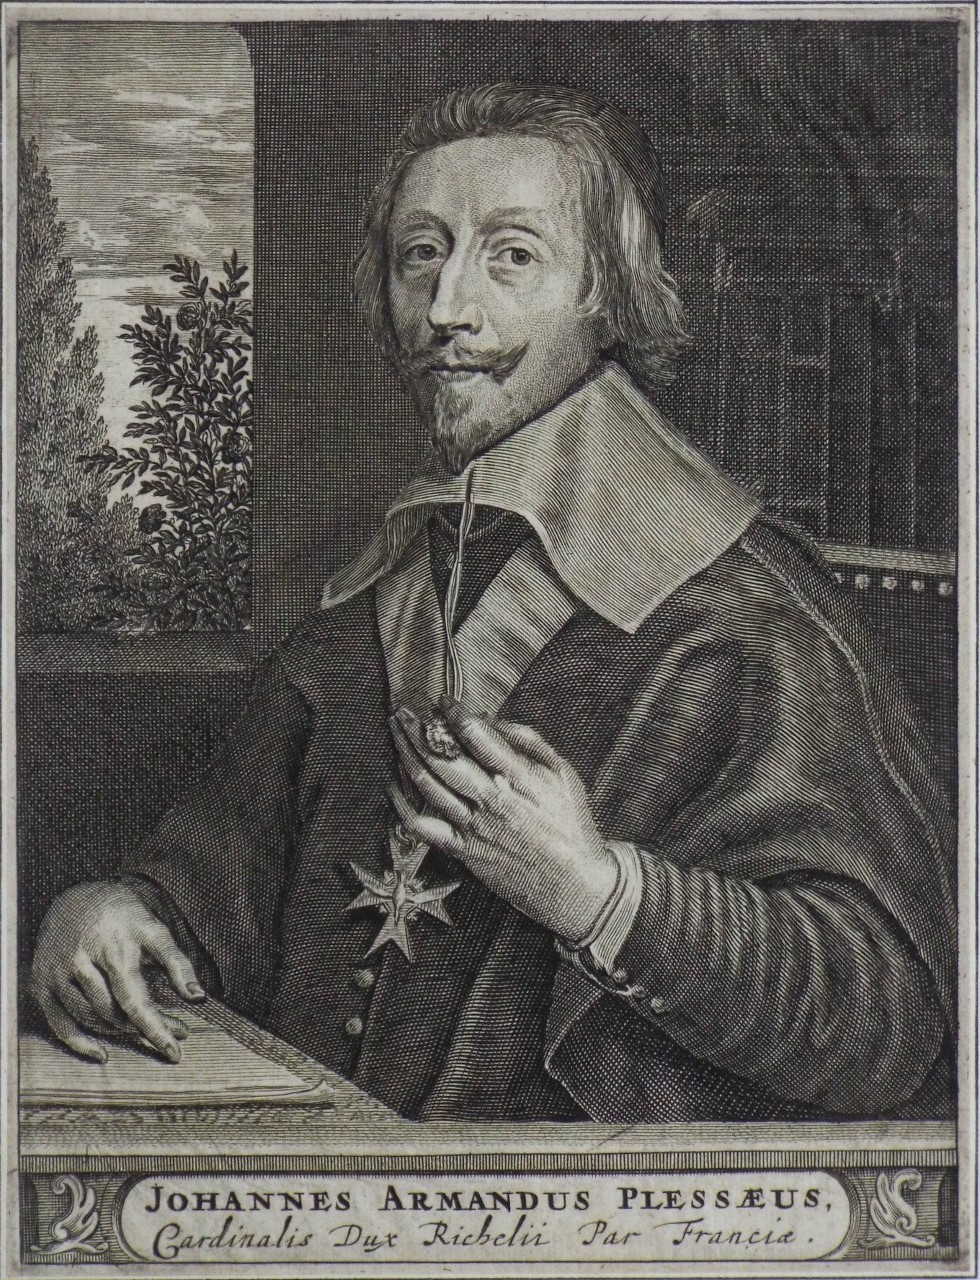 Print - Johannes Armandus Plessaeus, Cardinalis Dux Richelu Par Franciae.